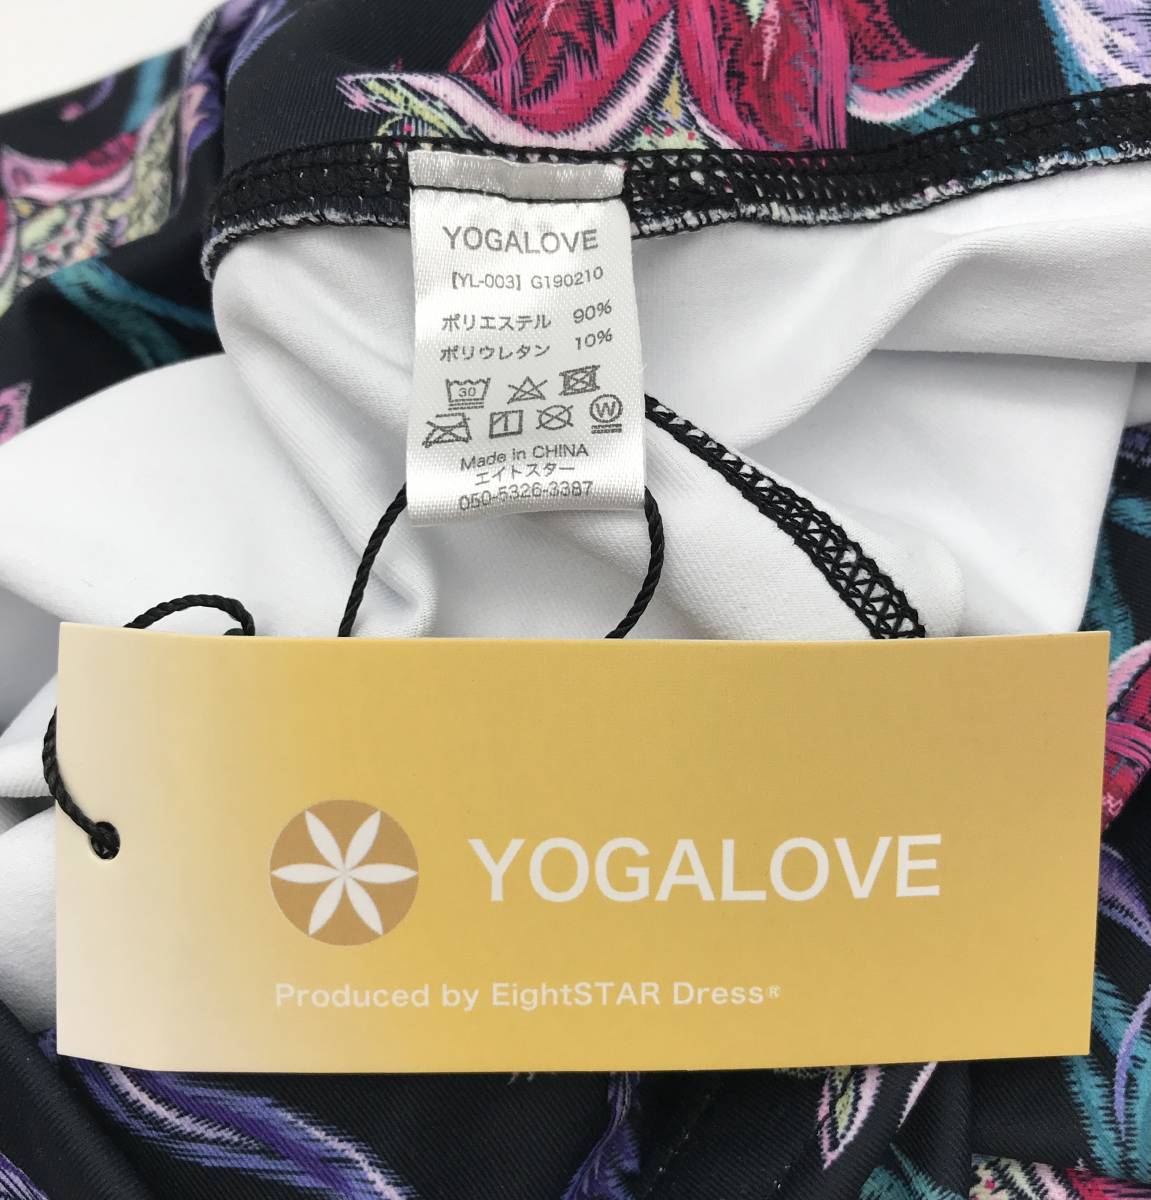 #53_1073 бесплатная доставка [YOGALOVE йога Rav ] йога одежда леггинсы йога брюки стрейч 9 минут длина женский L размер вставка .a цветок 